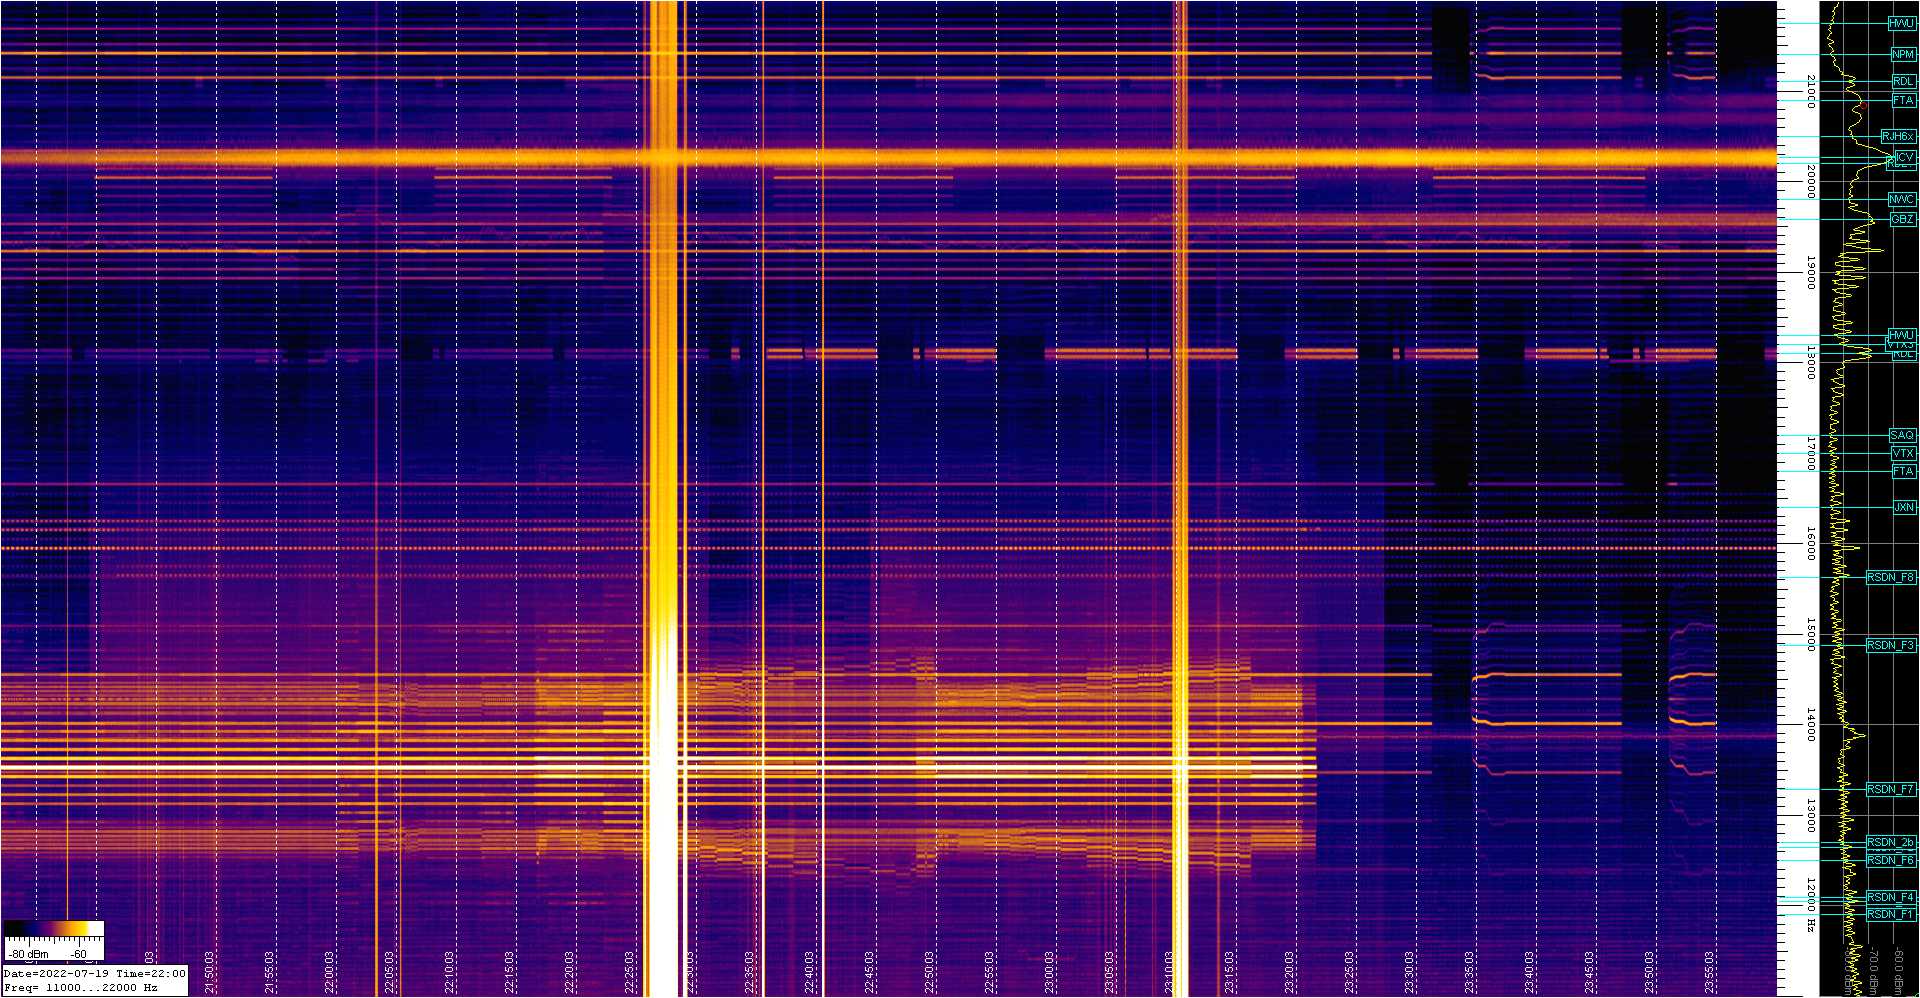 Spettrogramma che mostra la distribuzione del rumore nella banda 11-22 kHz registrato dalla stazione VLF installata presso l'Osservatorio Astronomico "N. Copernico" di Saludecio (RN): si notano gli intensi disturbi intorno alle 23 UTC.